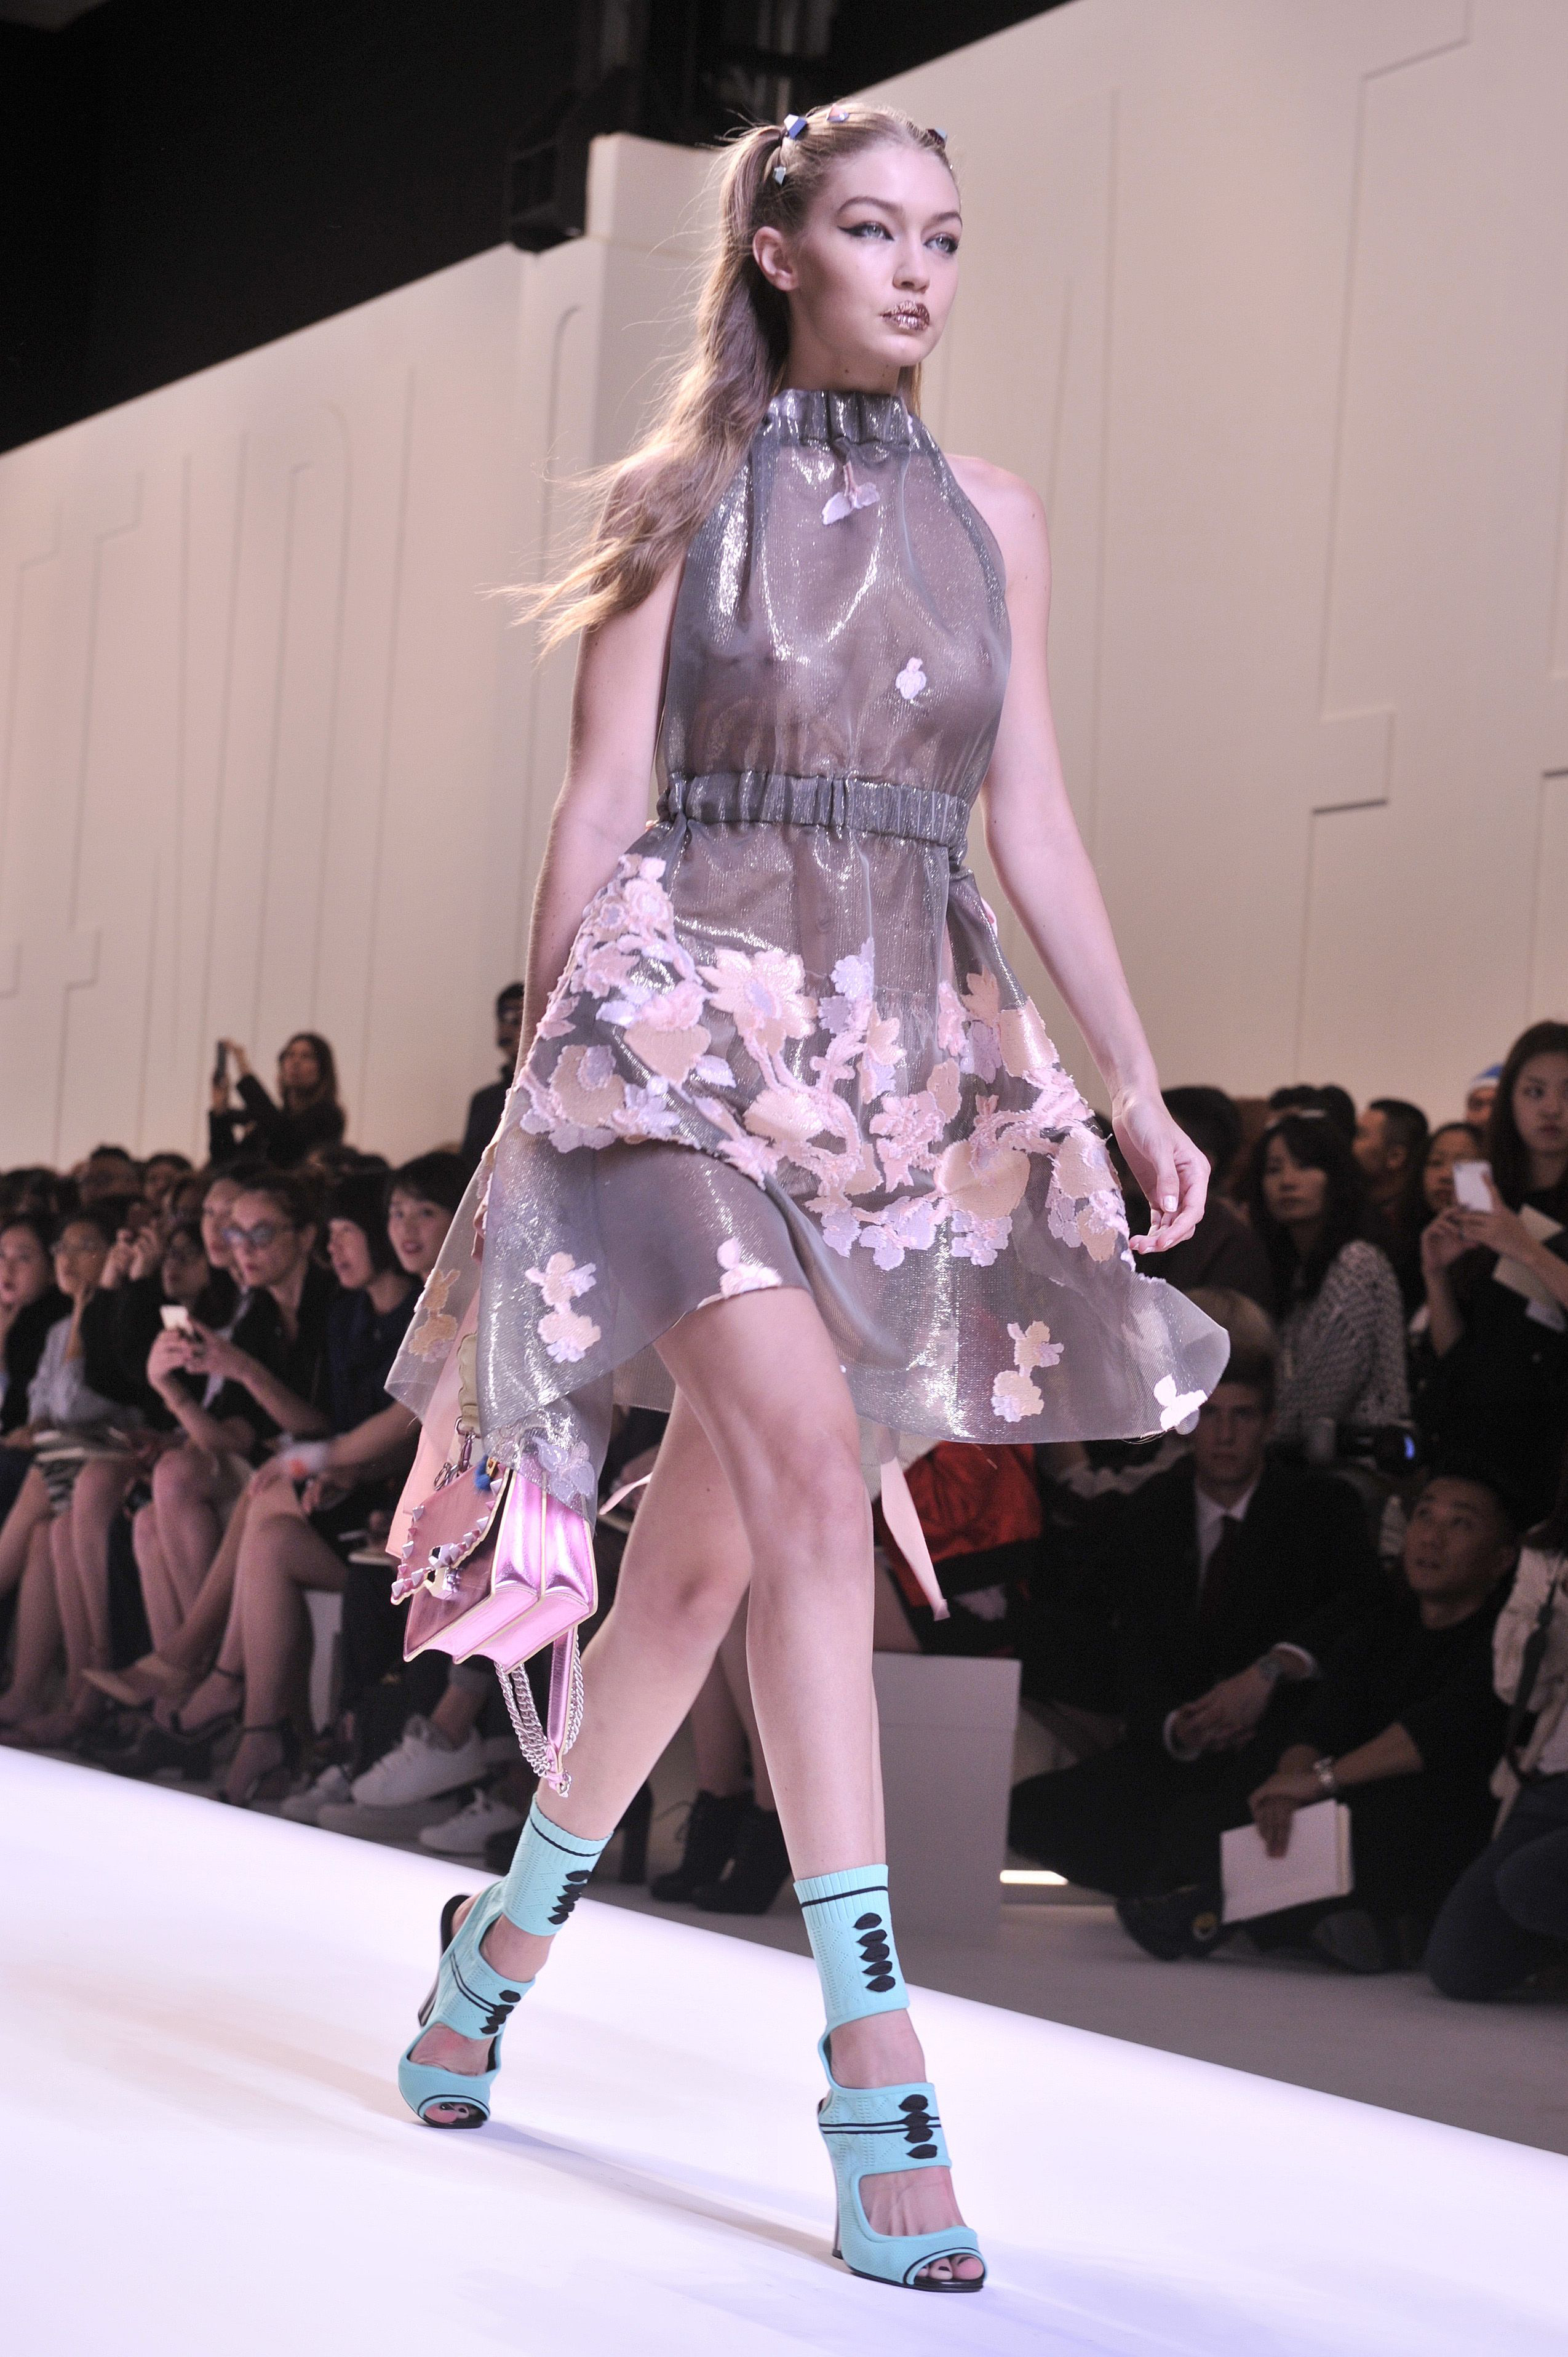 Gigi-Hadid-In-Floral-dress.jpg